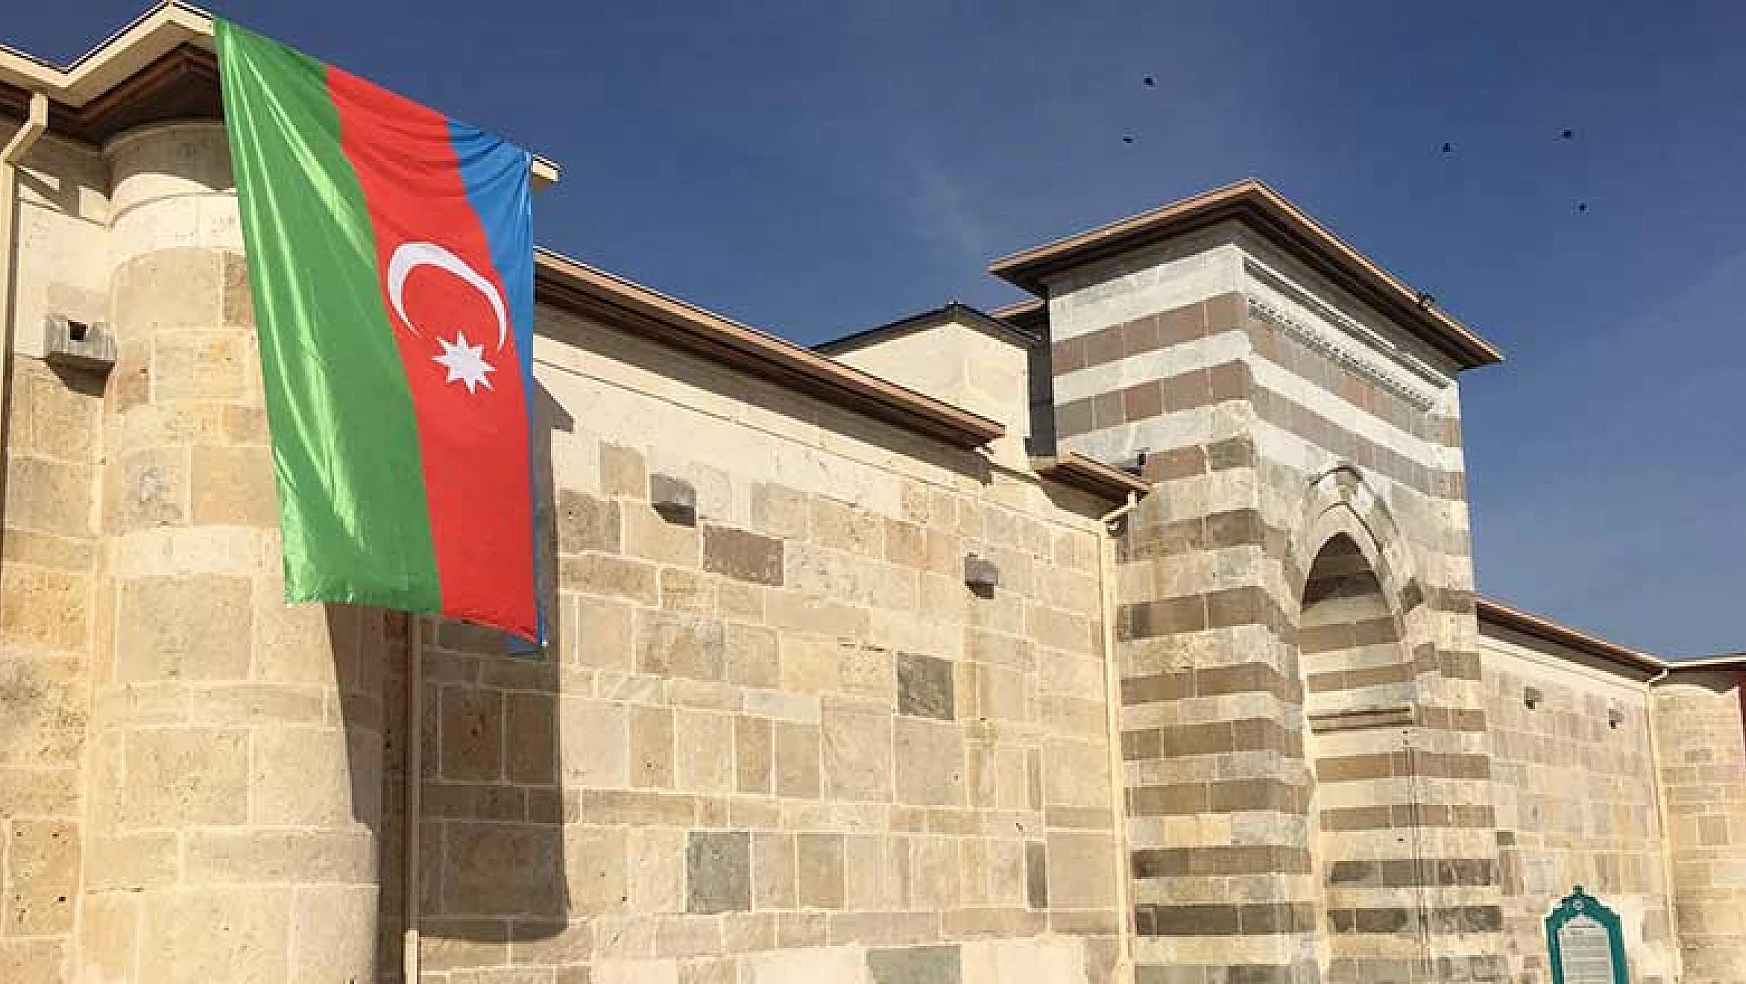 Zazadın Hanı'na Azerbaycan bayrağı asıldı